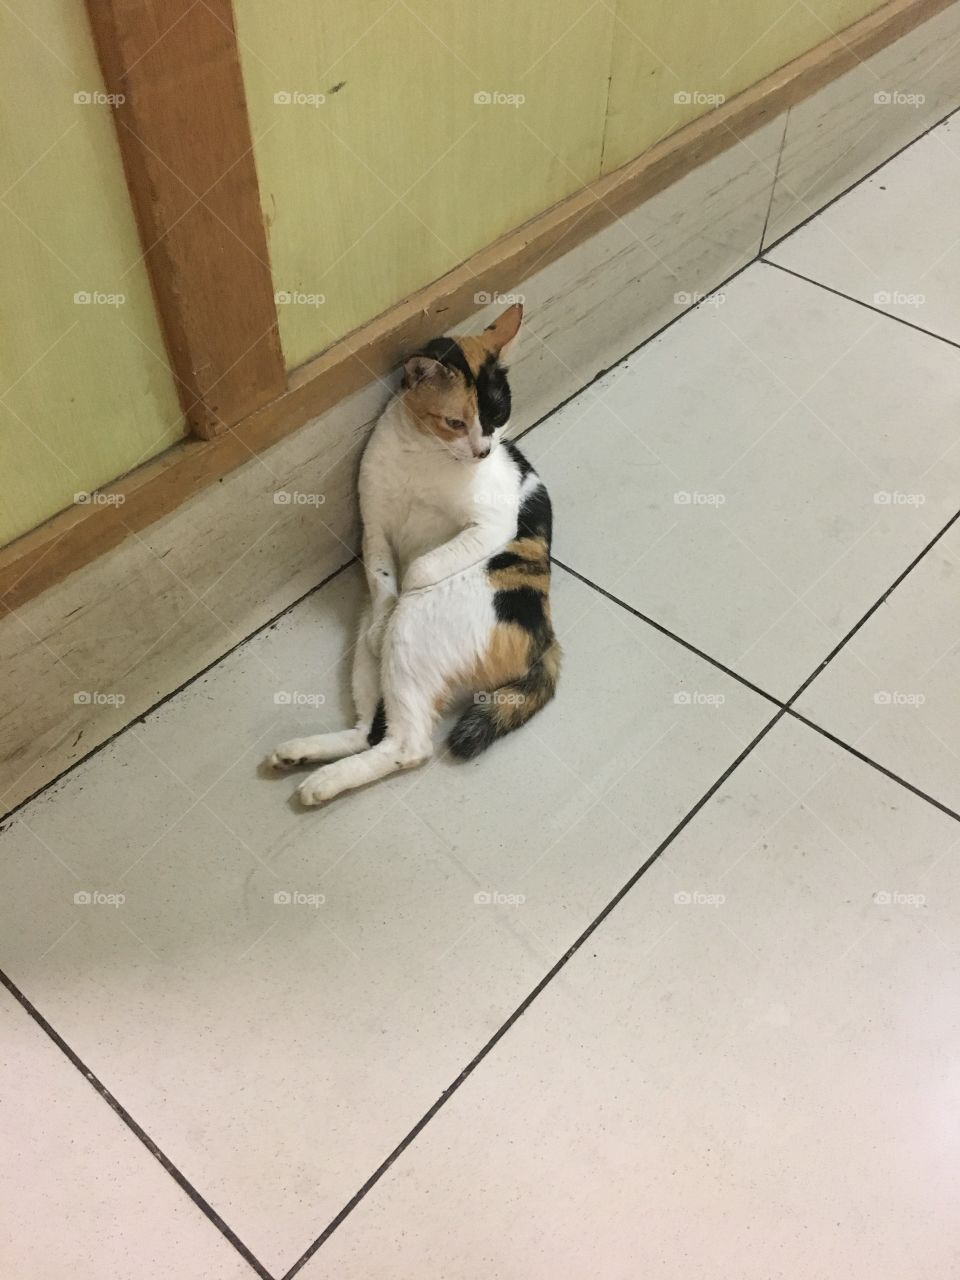 Poser cat